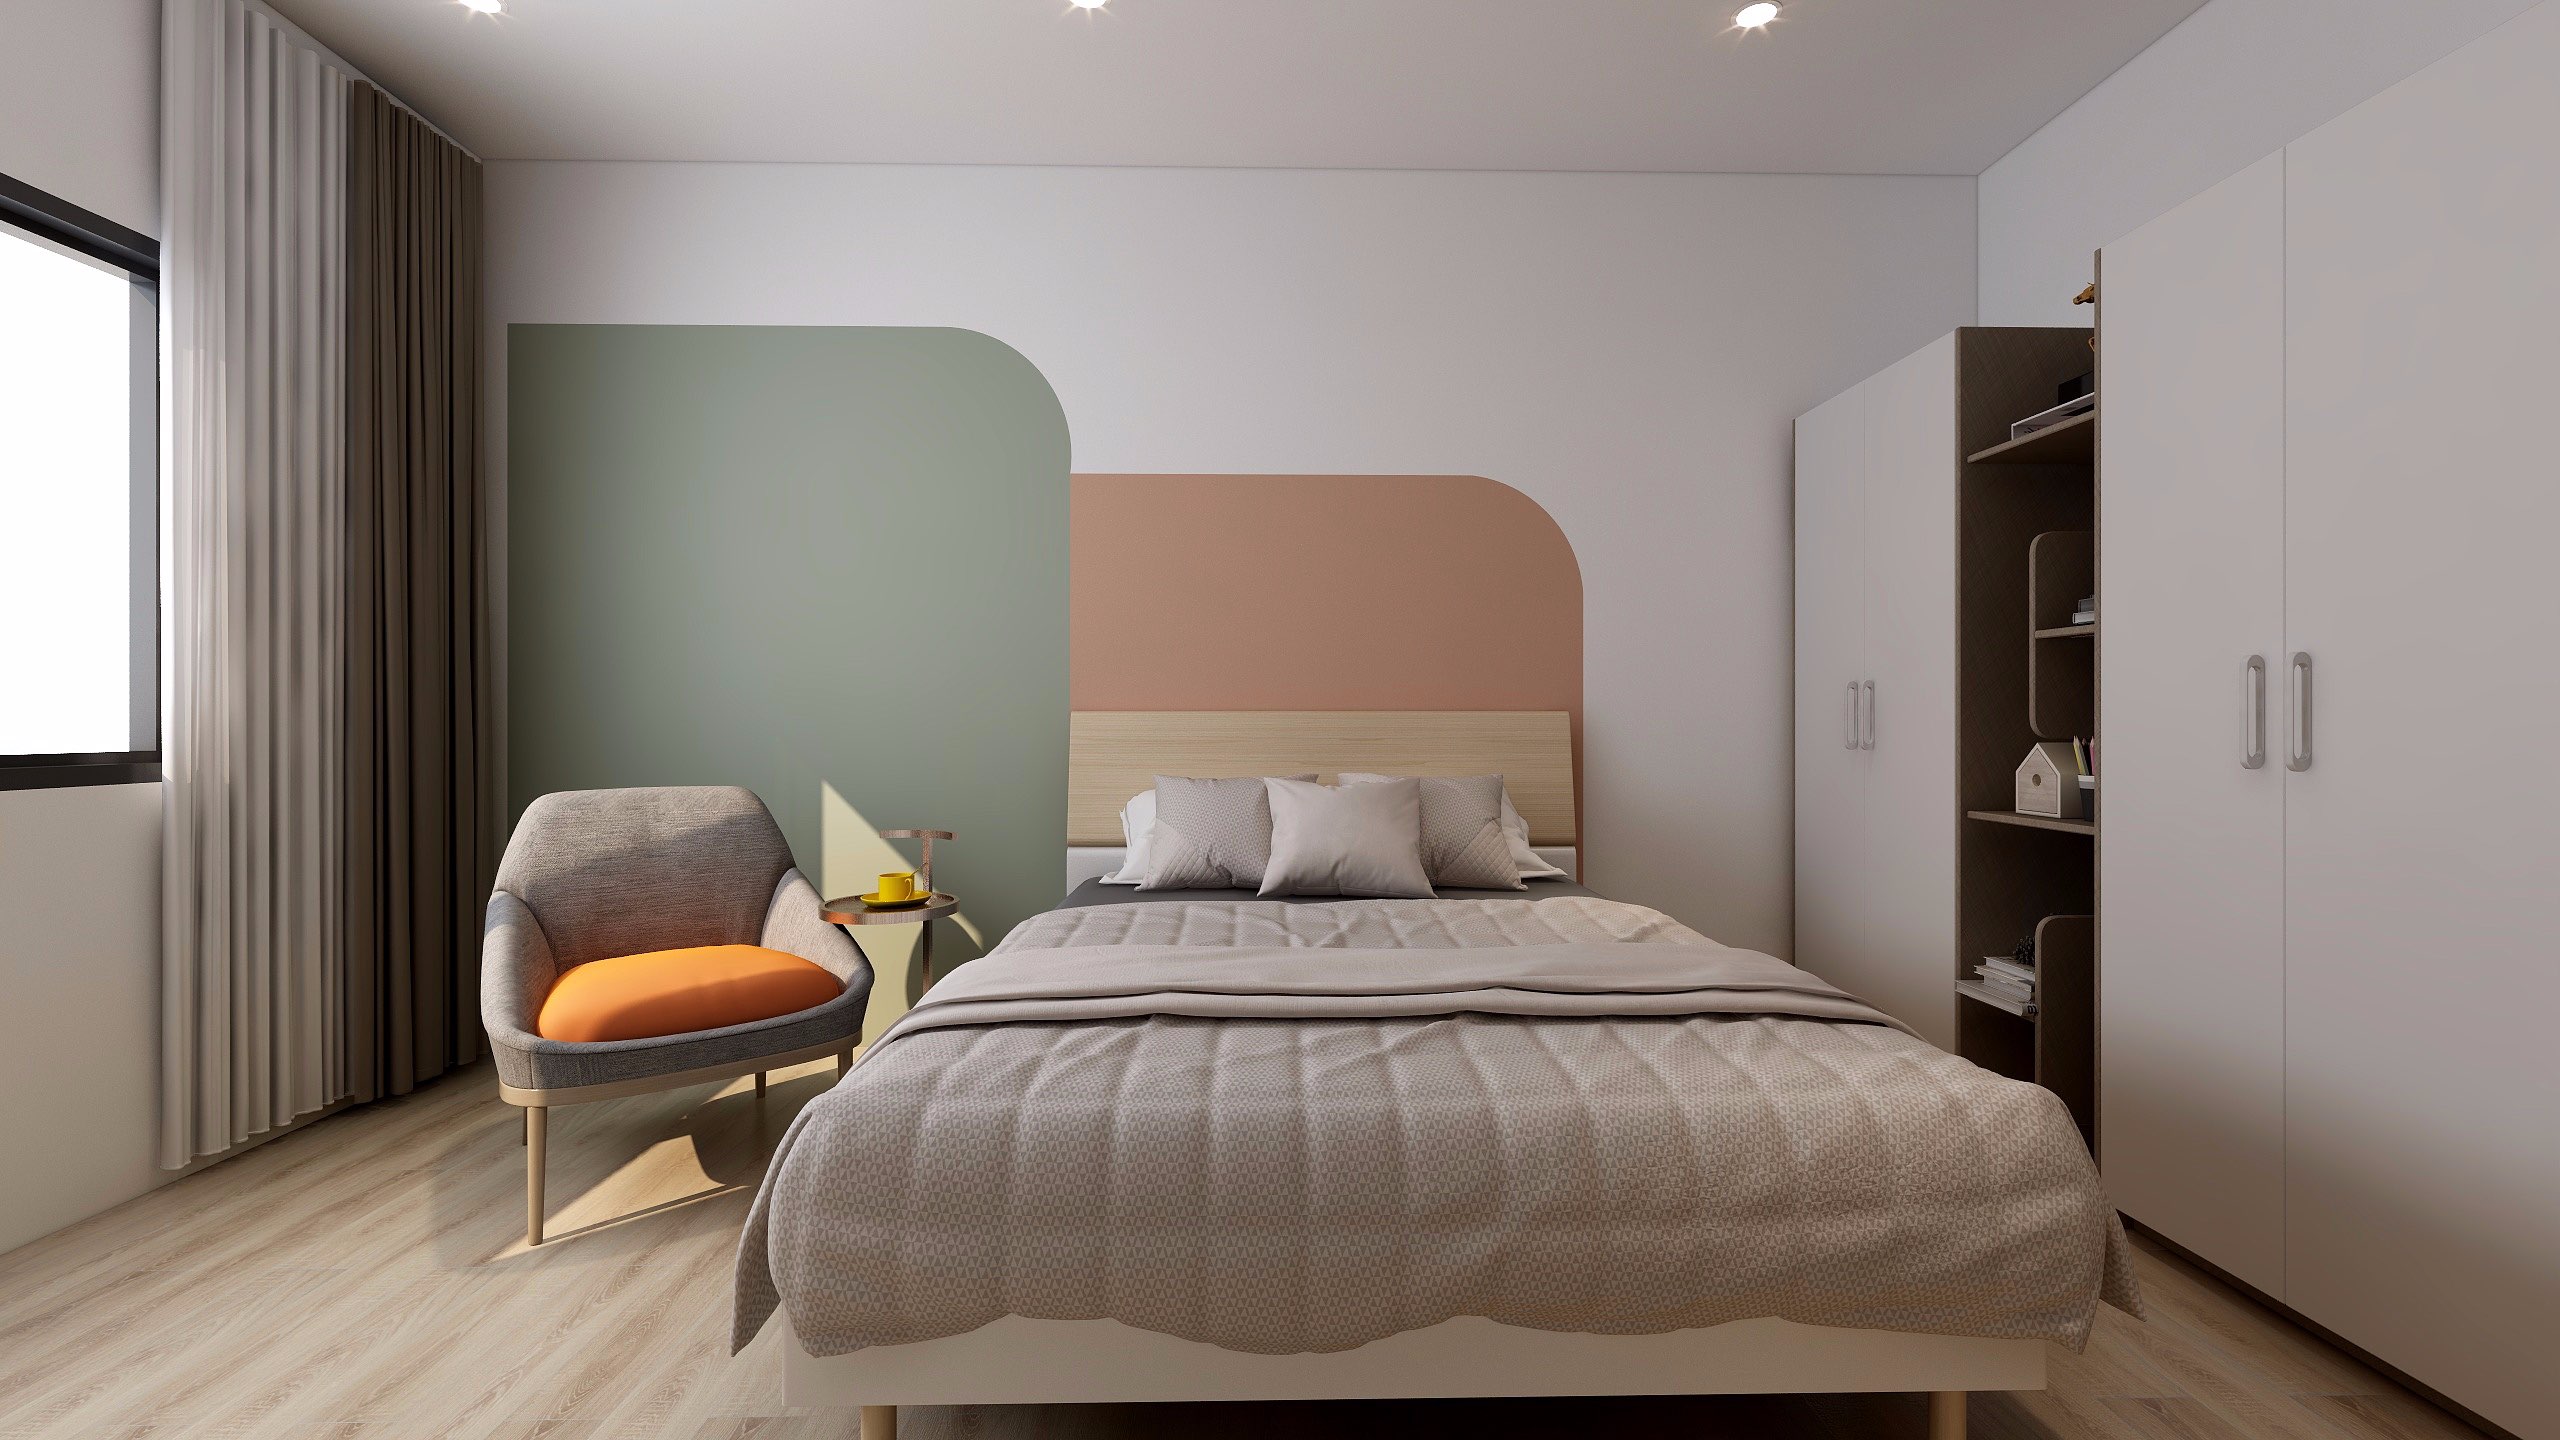 Không chỉ màu sắc, lựa chọn giường nằm, ghế ngồi chân cao thanh cảnh biến tấu linh hoạt cũng giúp phòng ngủ của bạn giàu sức hút hơn